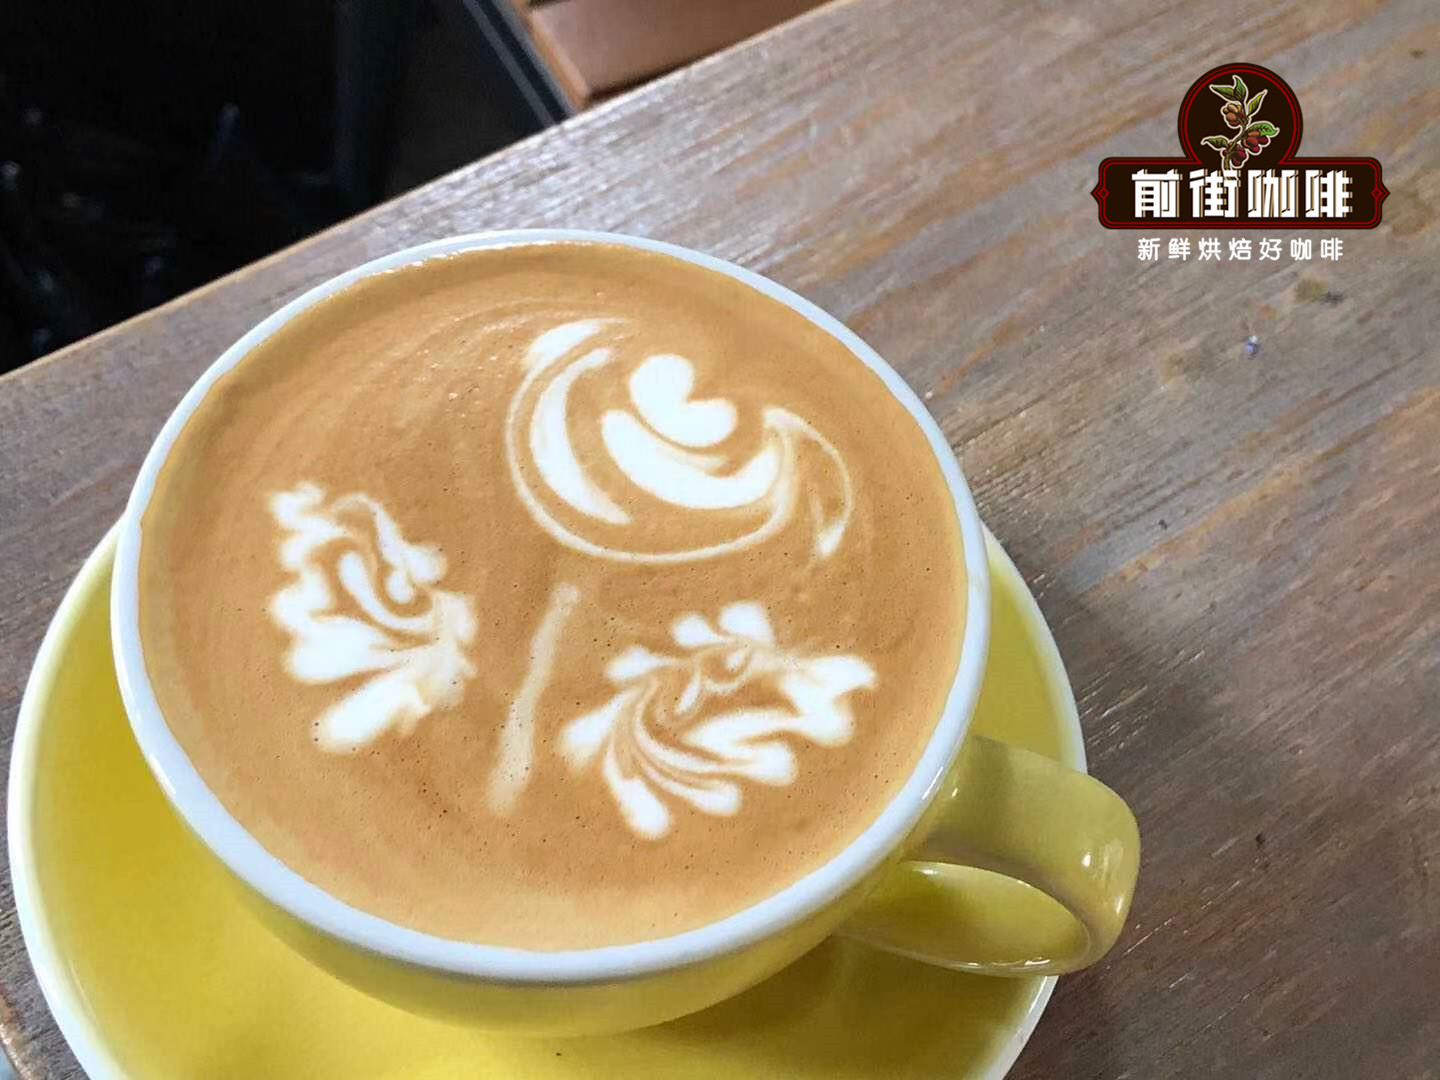 意式咖啡和美式咖啡的口感区别 懂咖啡的人一般喝哪种咖啡